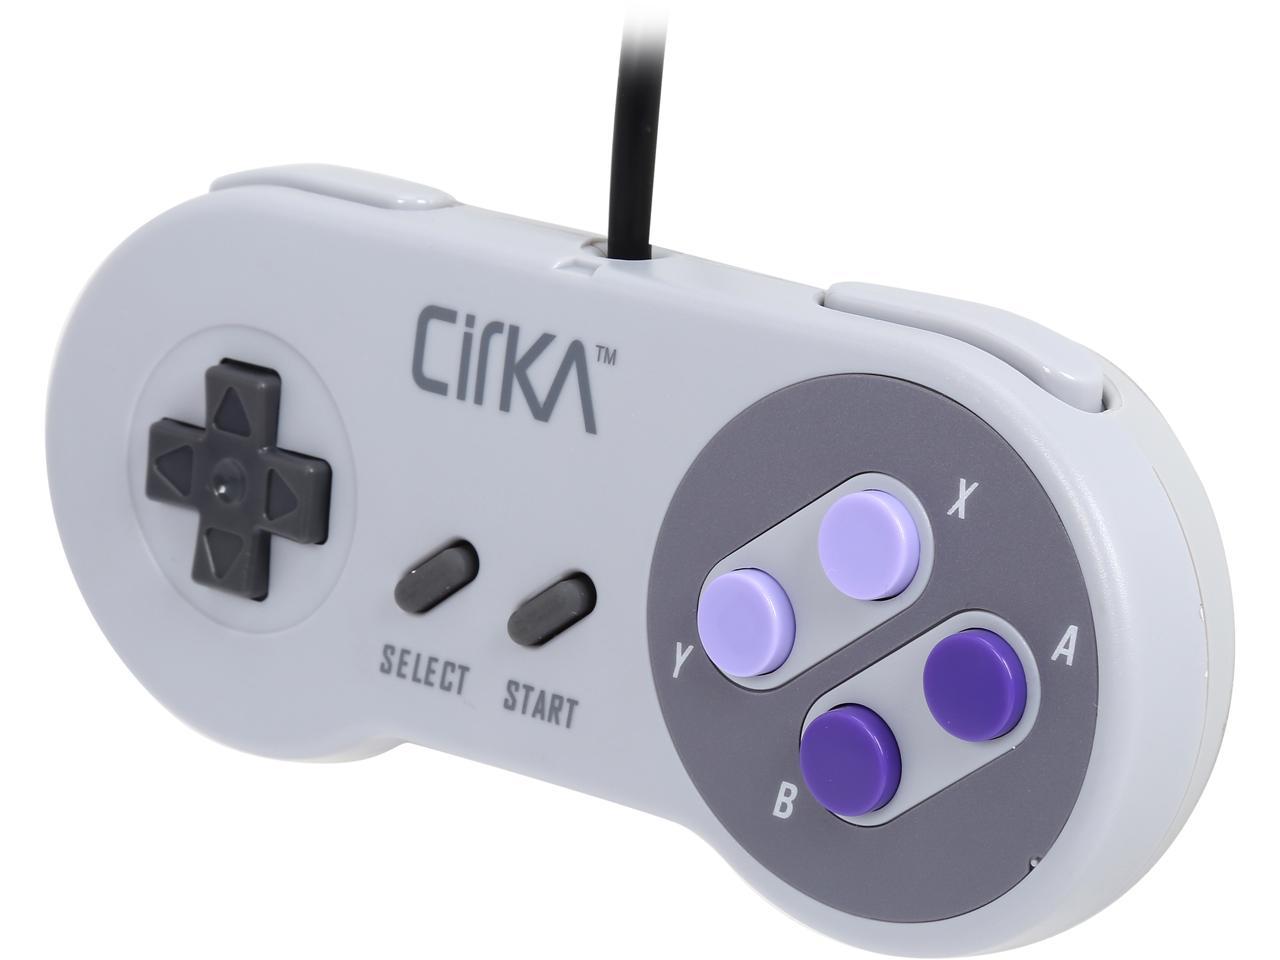 Cirka S91 Classic Retro Controller for SNES Super Nintendo - Newegg.com